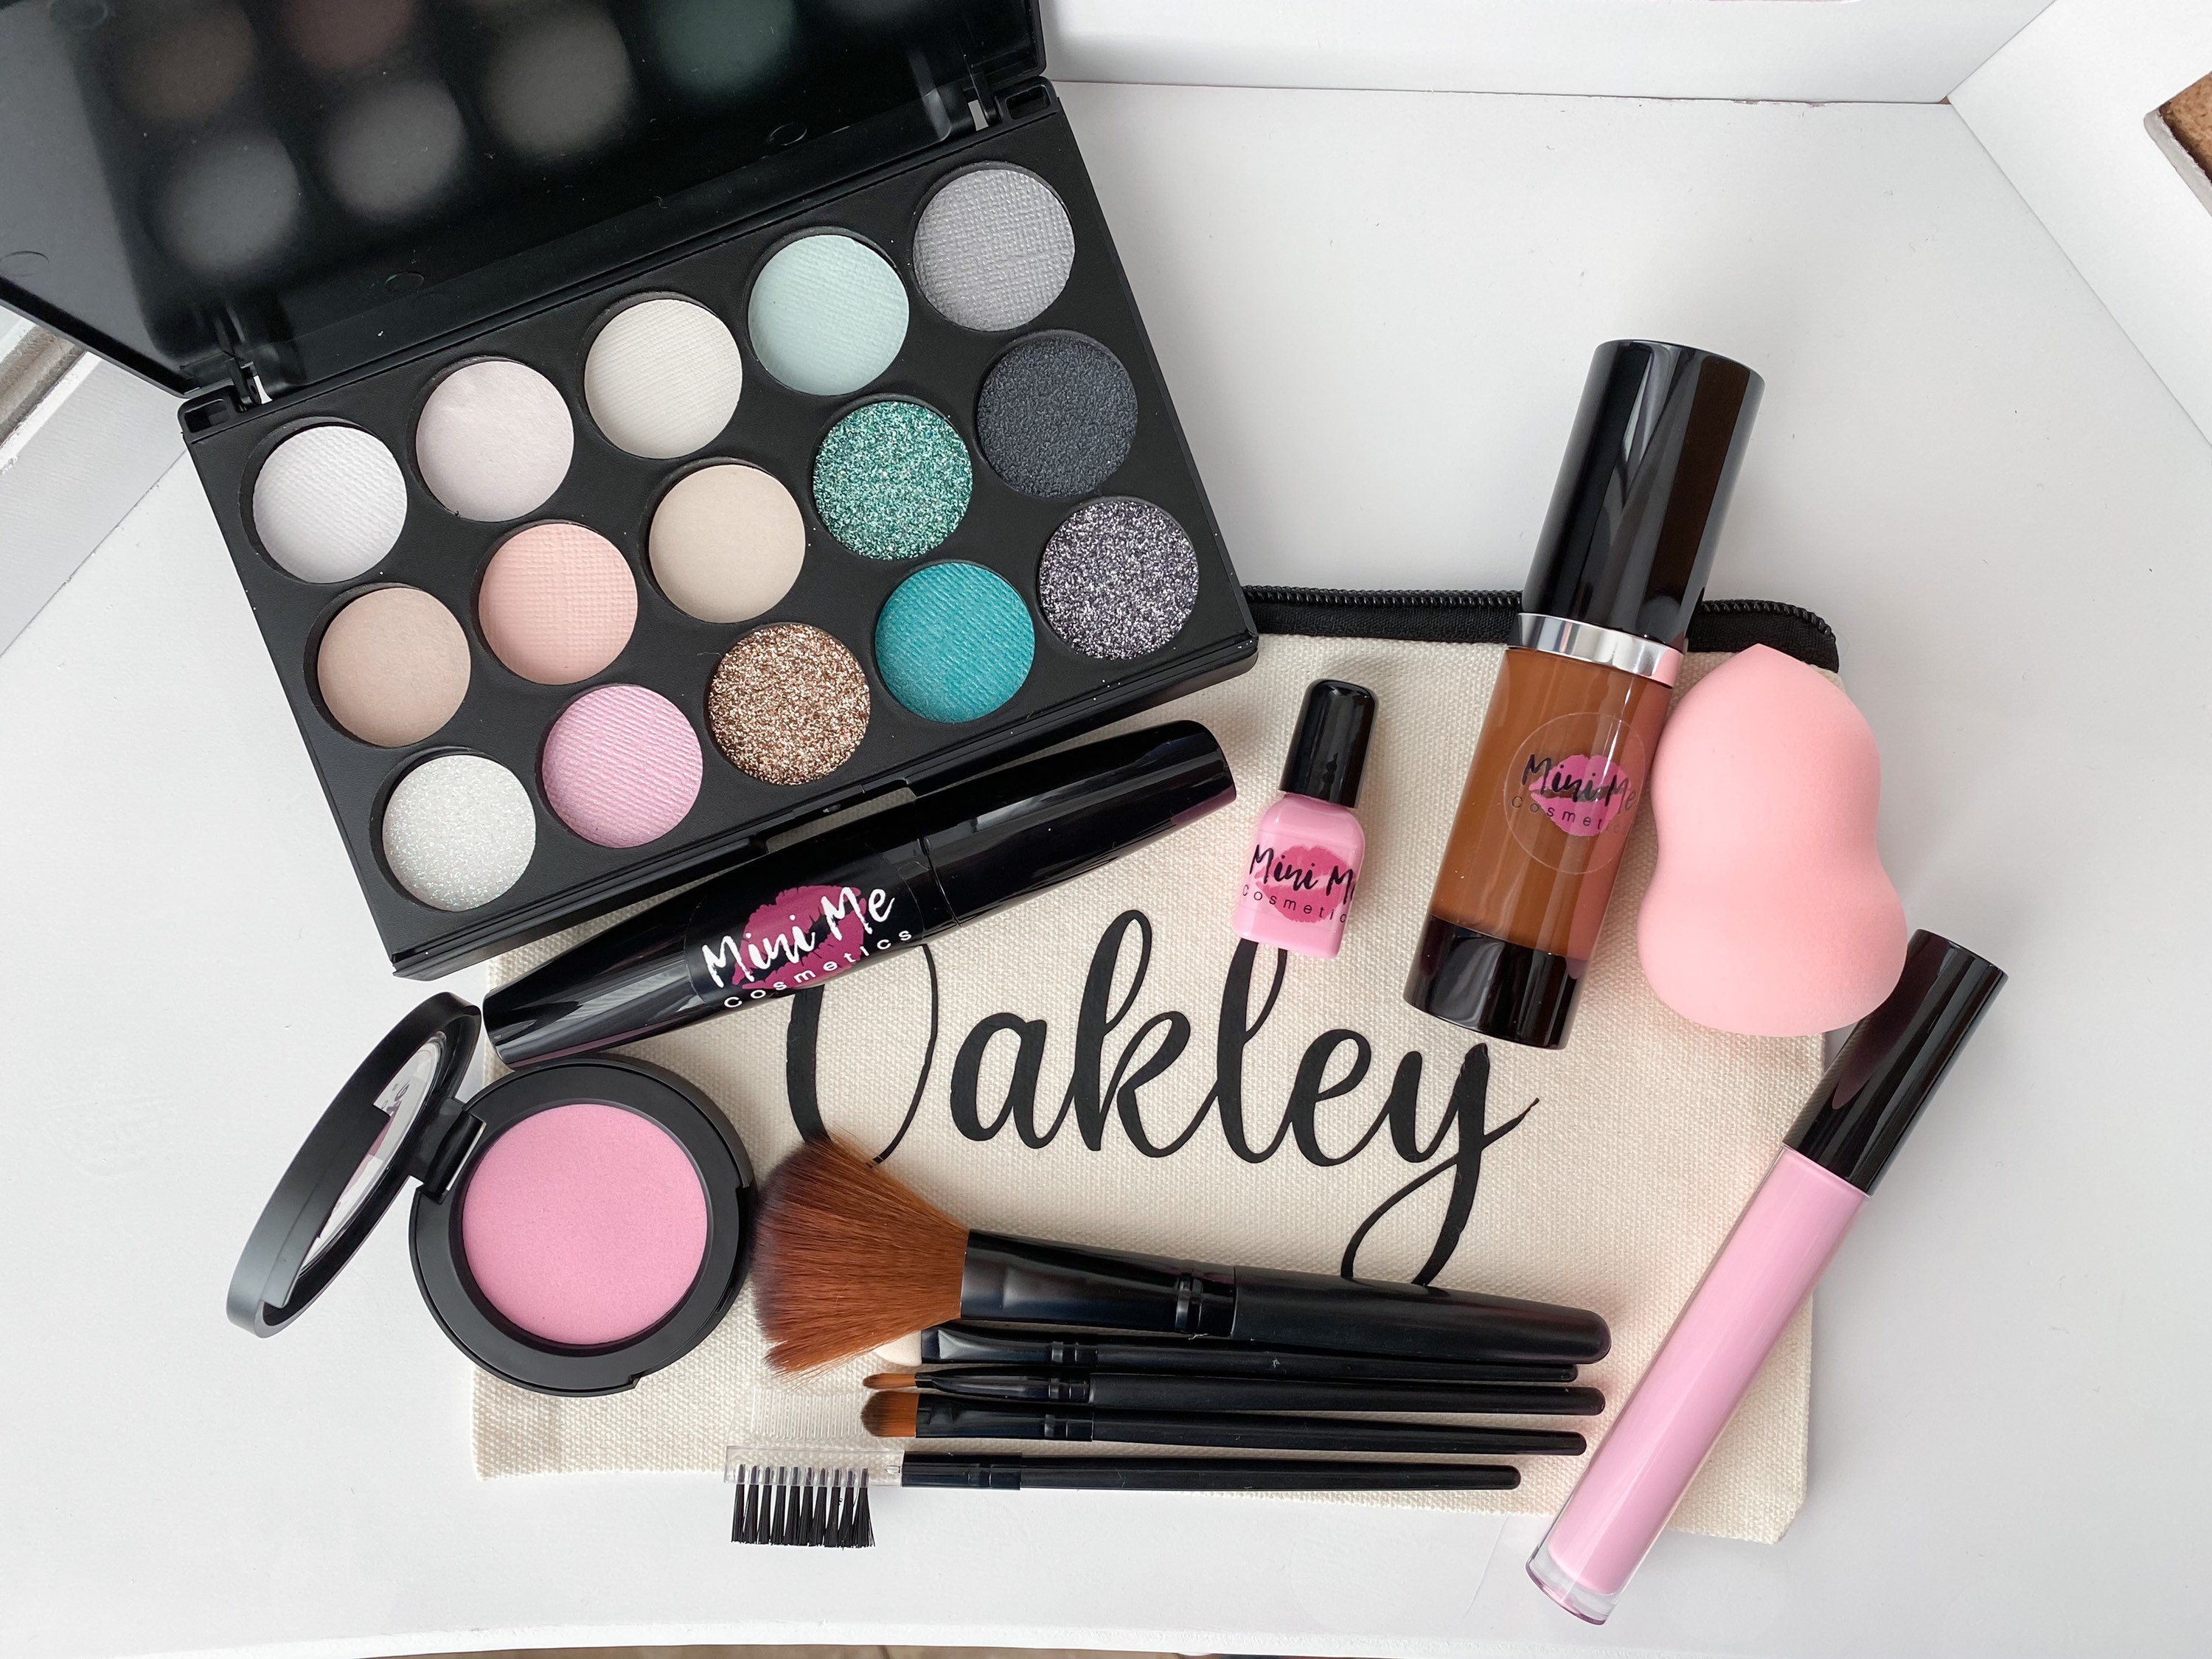 Mini makeup kit *mini luxury makeup kit * emergency makeup kit